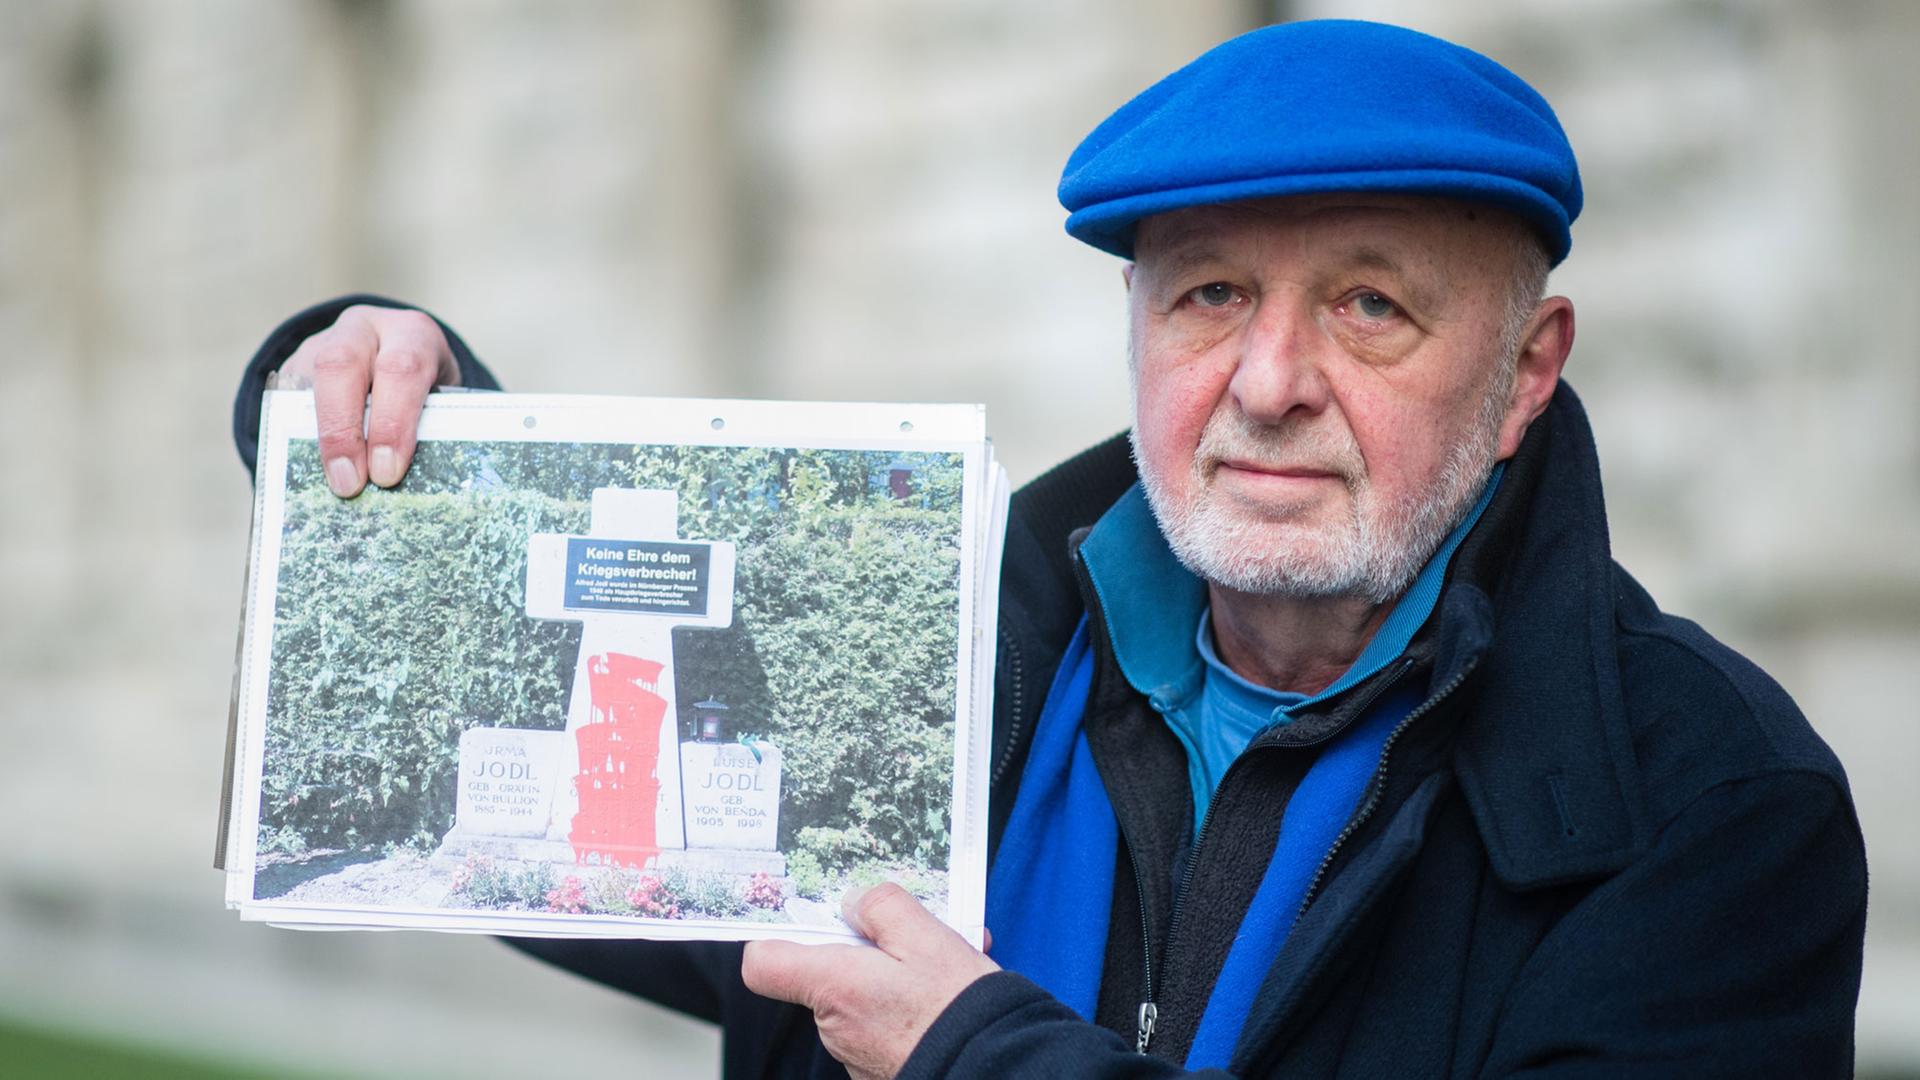 Ein Mann mit blauer Mütze und blauem Schal, der Künstler Wolfram Kastner, hält die Fotografie eines Denkmals, welches mit roter Farbe beschmiert ist, in die Höhe.